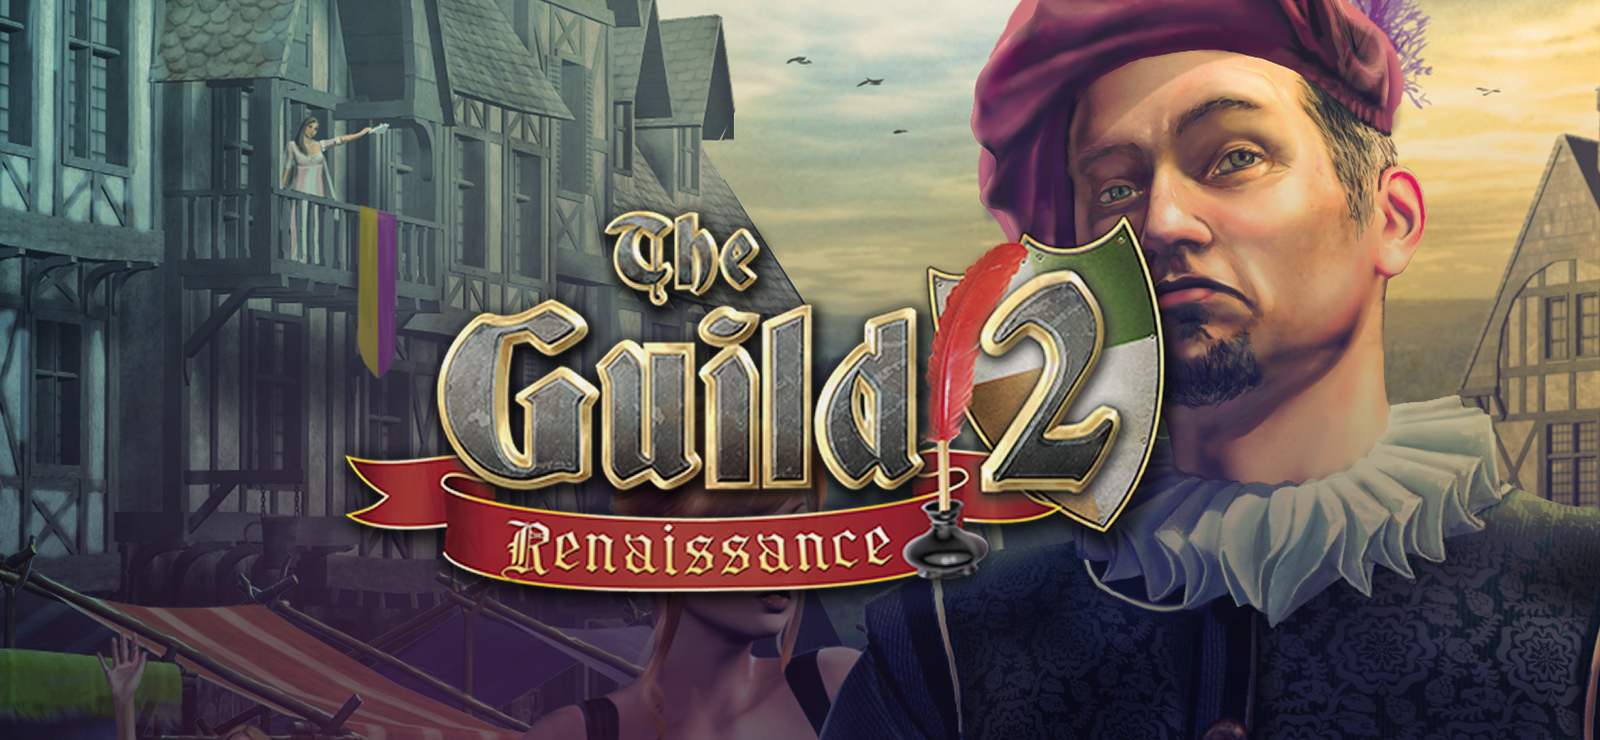 the guild 2 renaissance patron guide